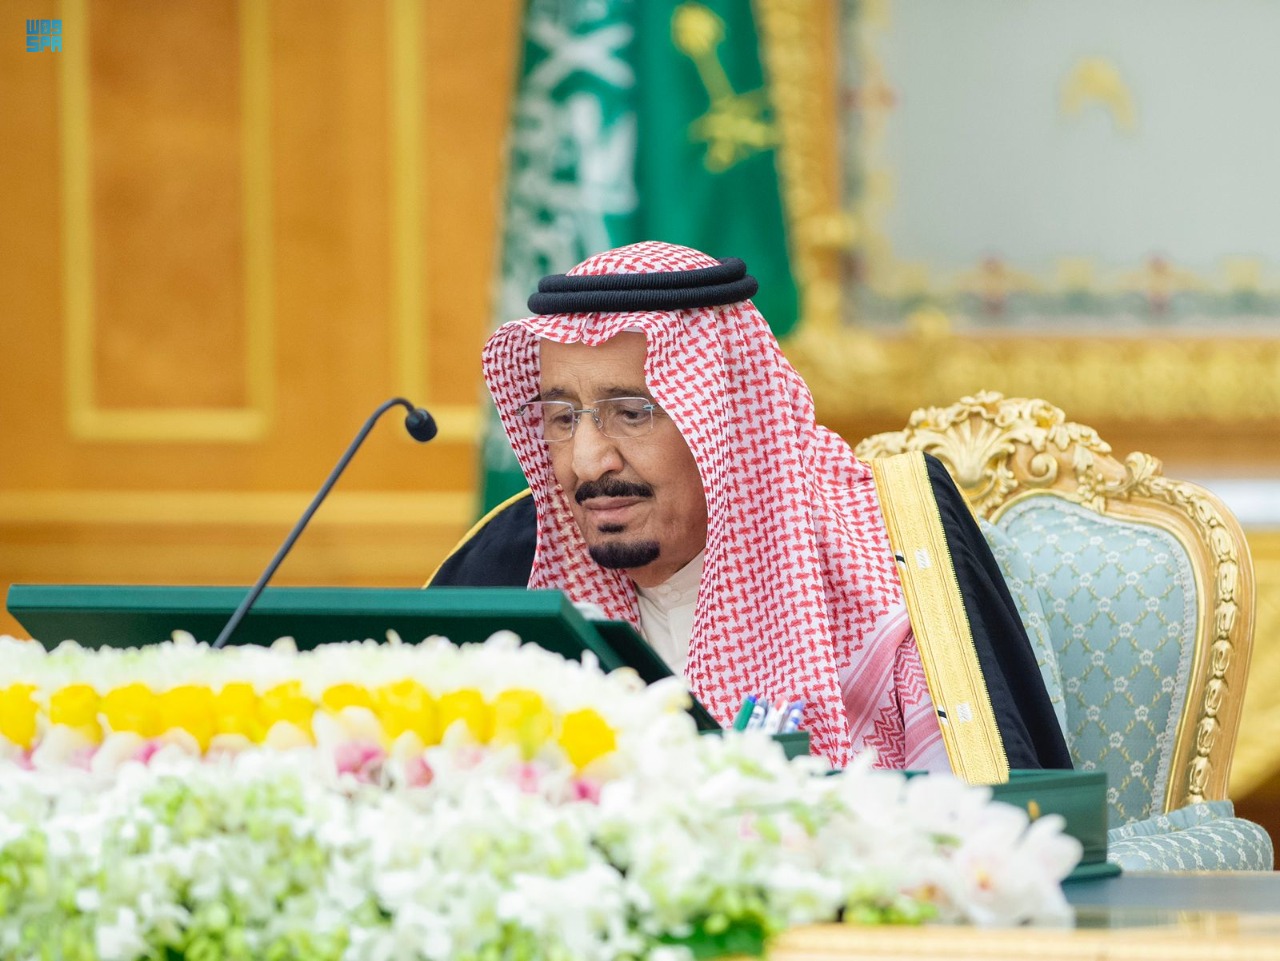 في السعوديه المملكه الوزراء هو رئيس العربيه مجلس ما هي